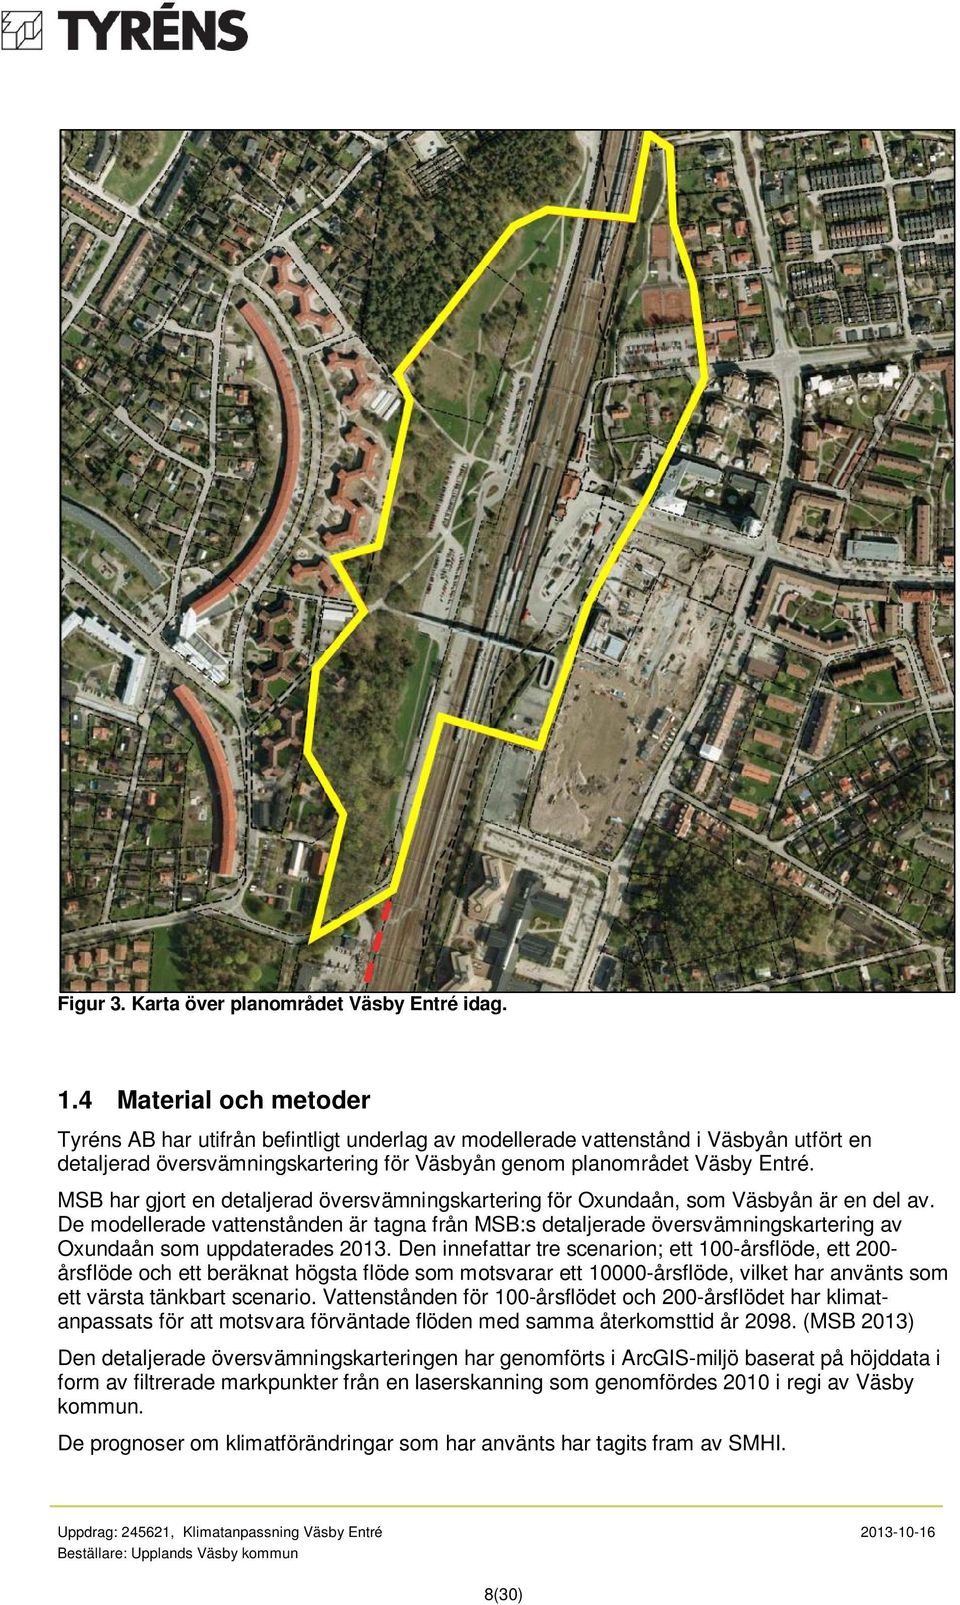 MSB har gjort en detaljerad översvämningskartering för Oxundaån, som Väsbyån är en del av.